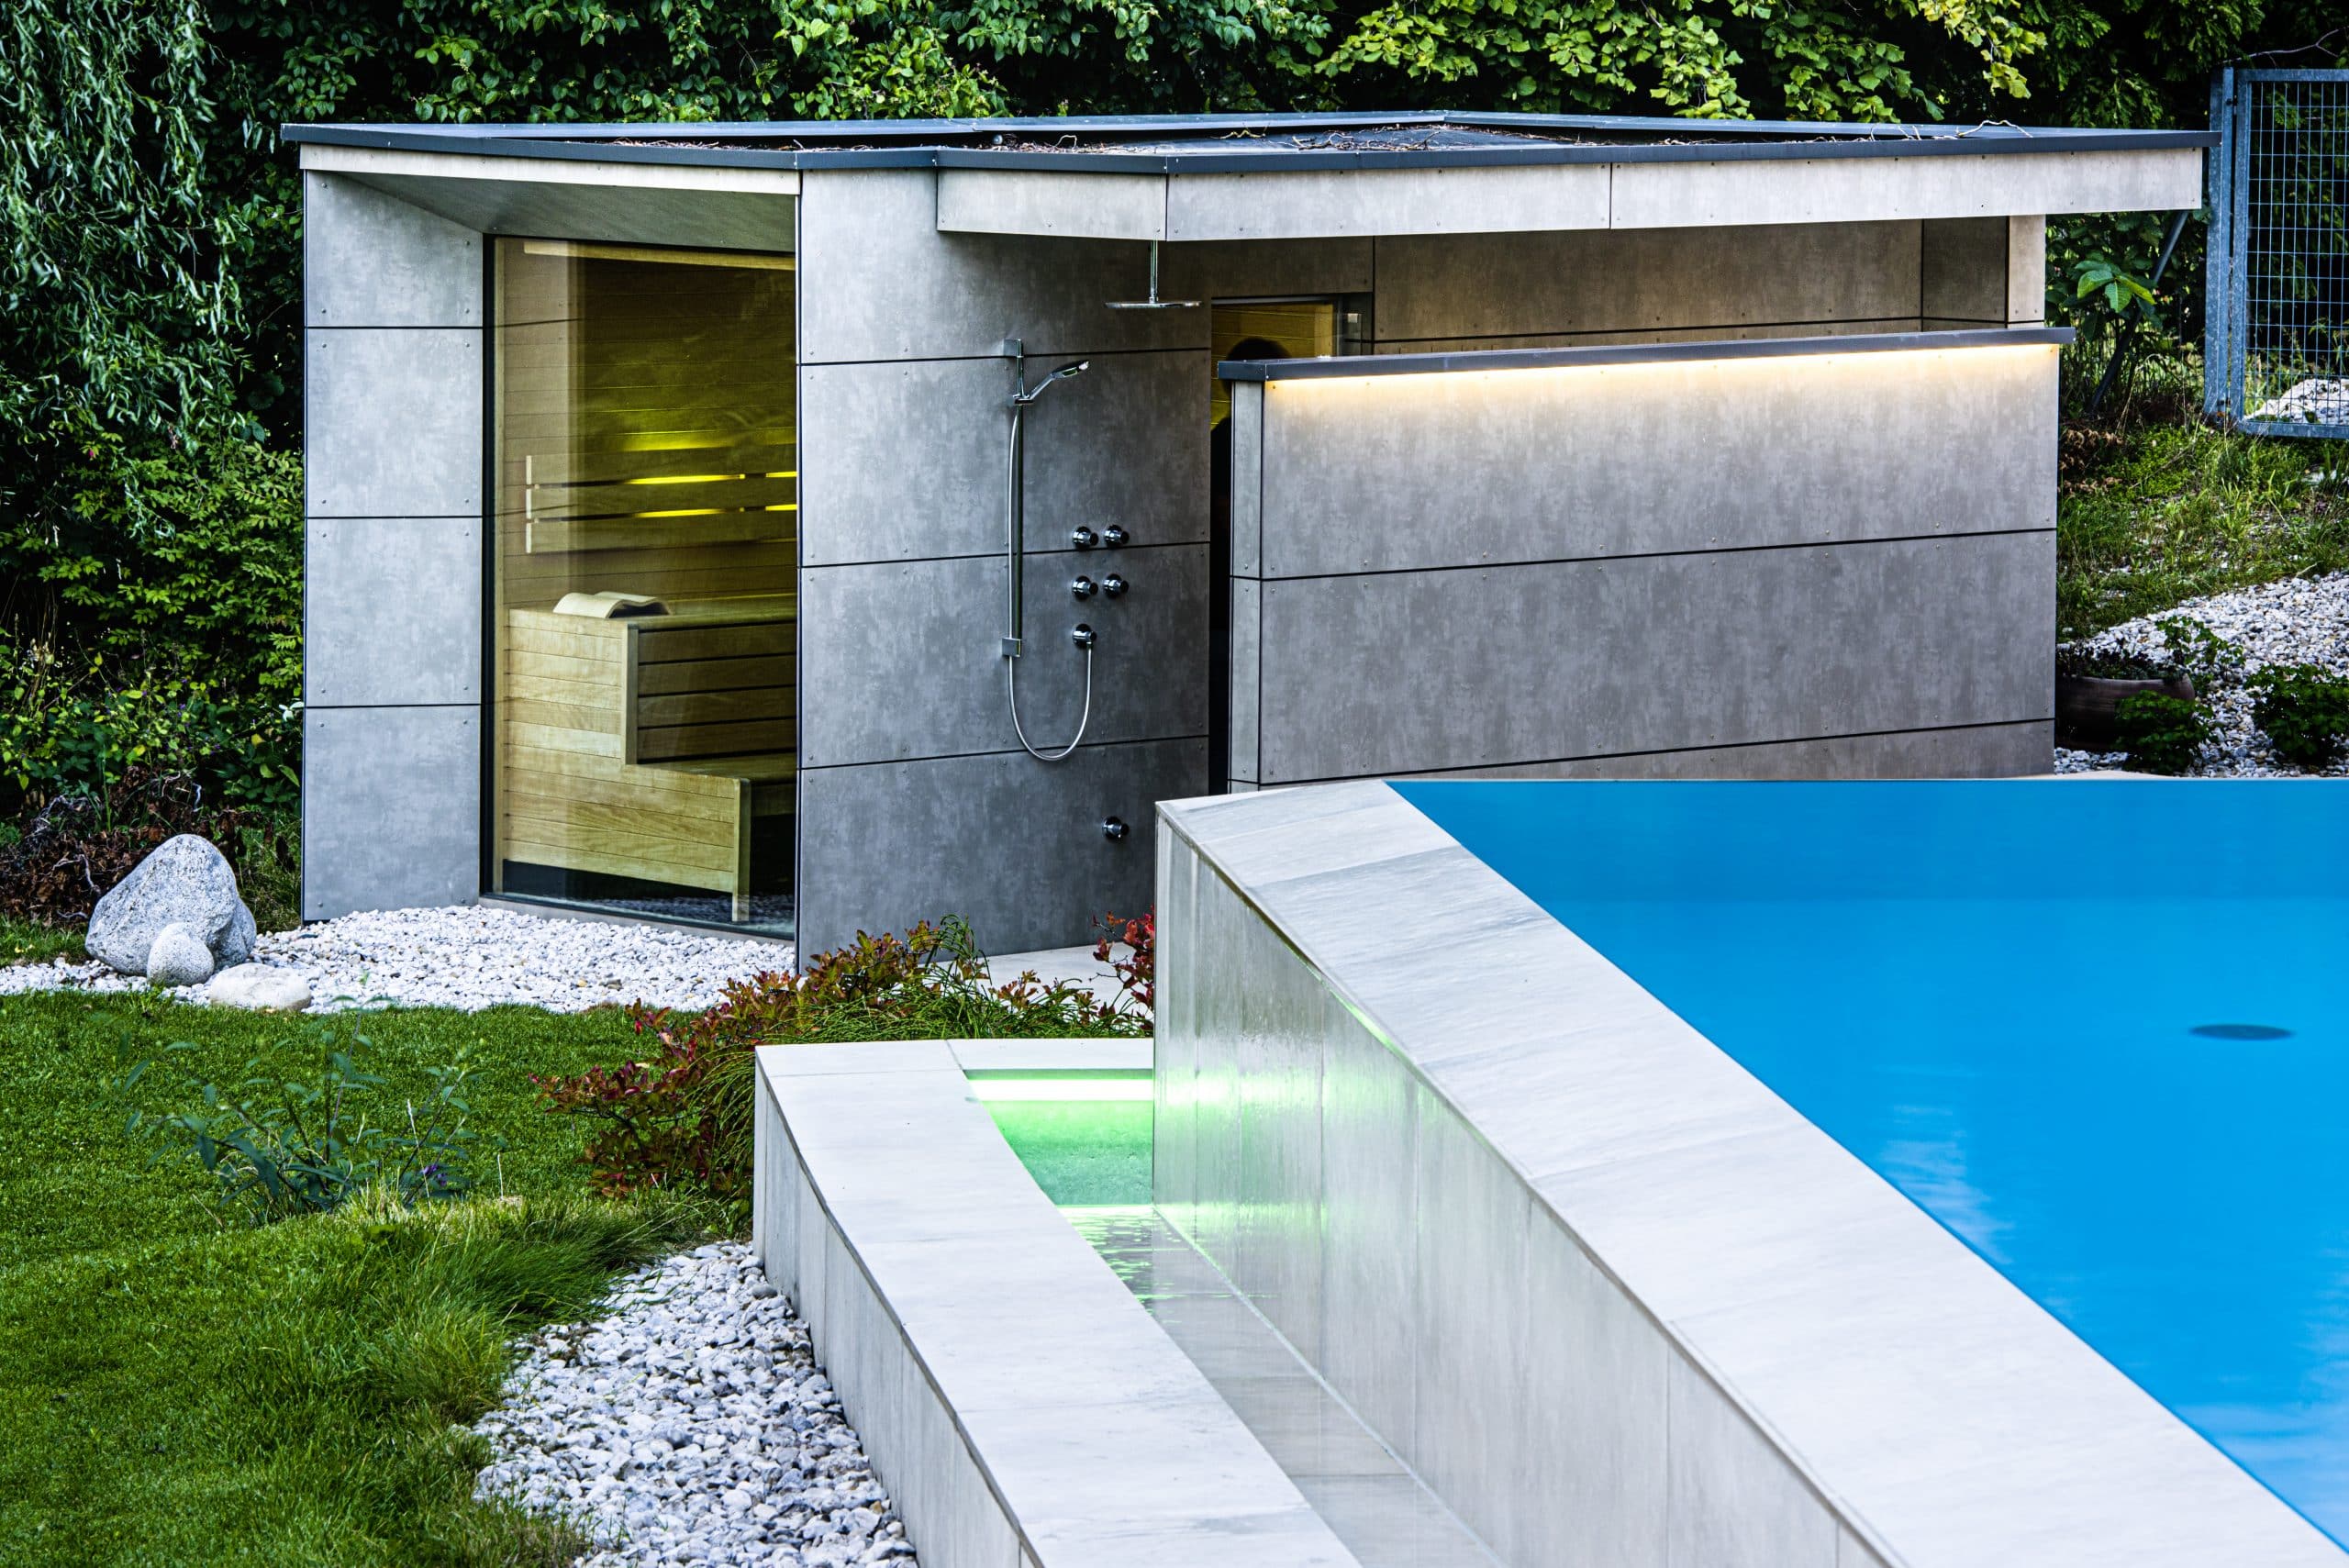 RUHA präsentiert eine Outdoorsauna mit integrierter Dusche und einen beleuchteten Pool in einem Garten.